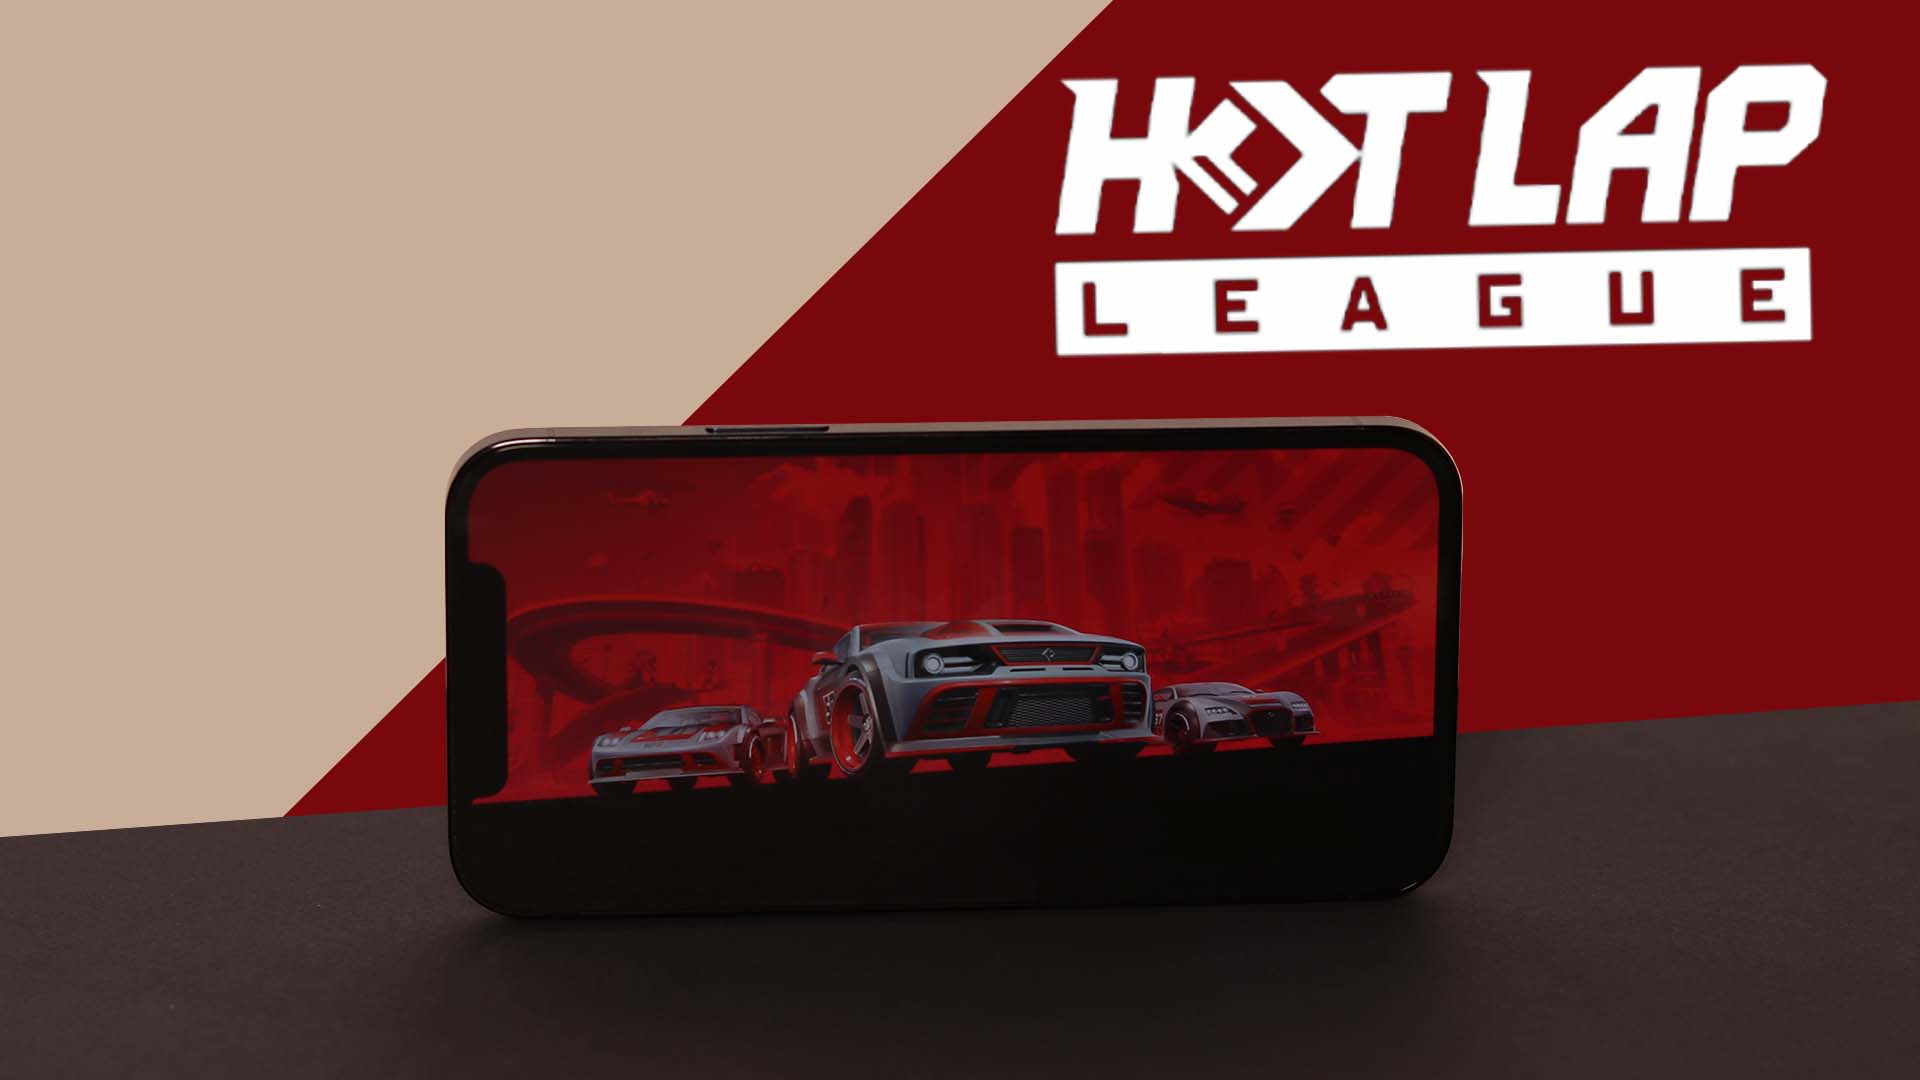 I love Hot Lap League (review)